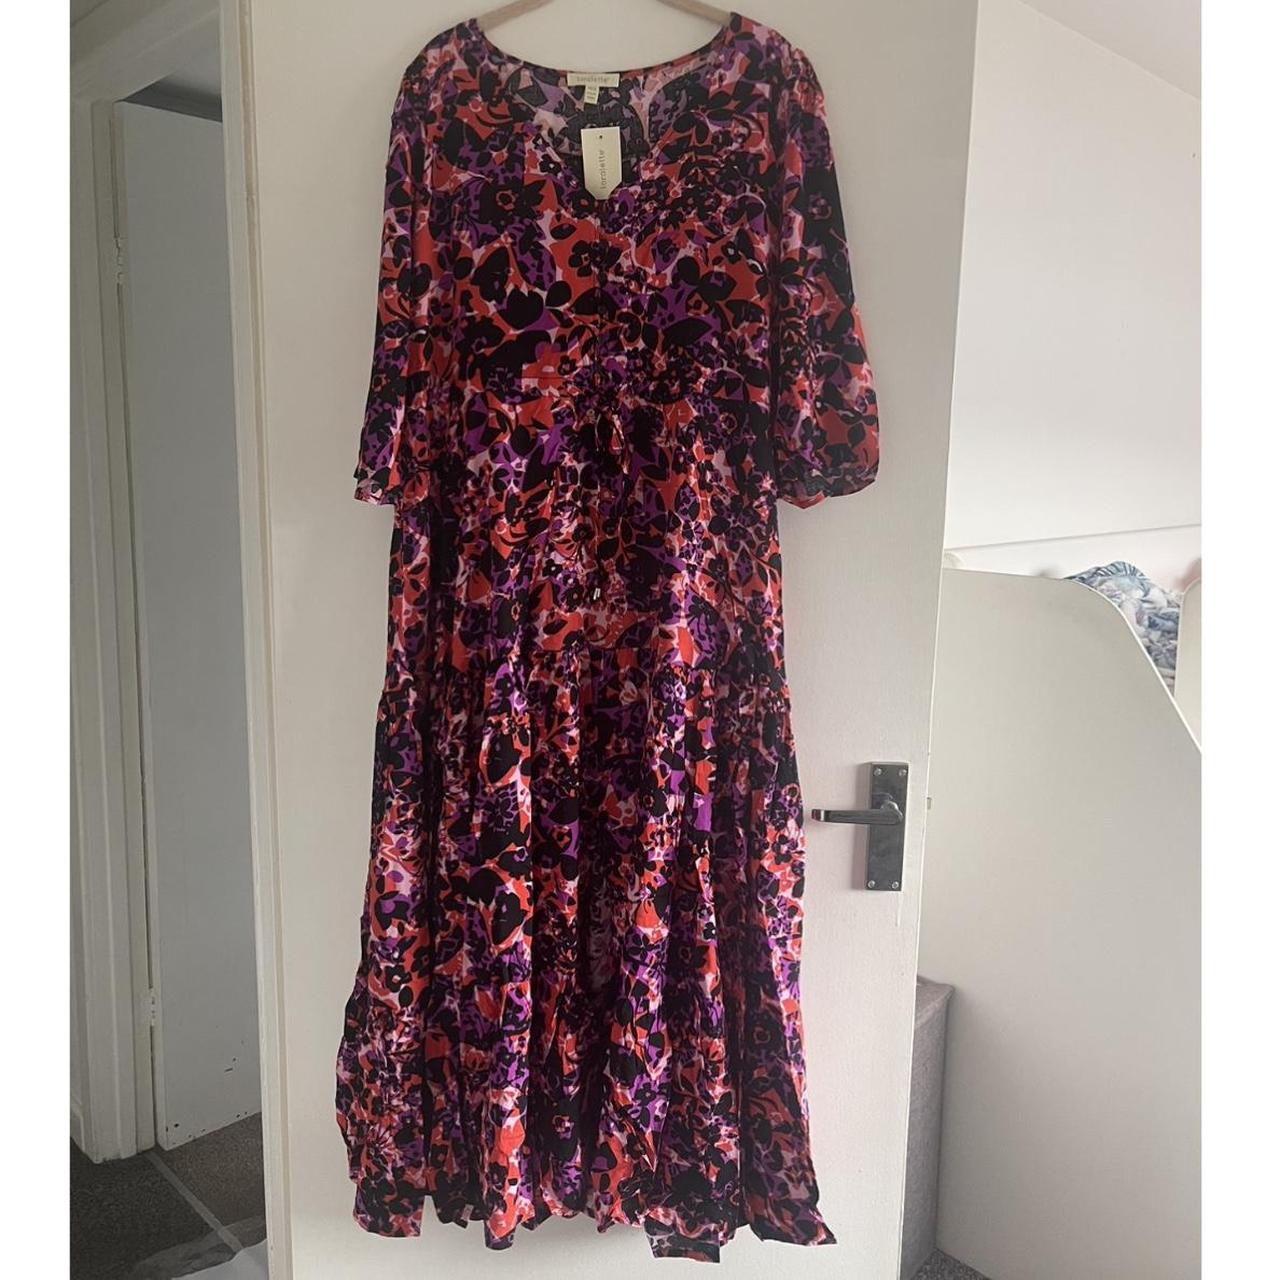 Loralette dress. Size 14/16 UK. - Depop